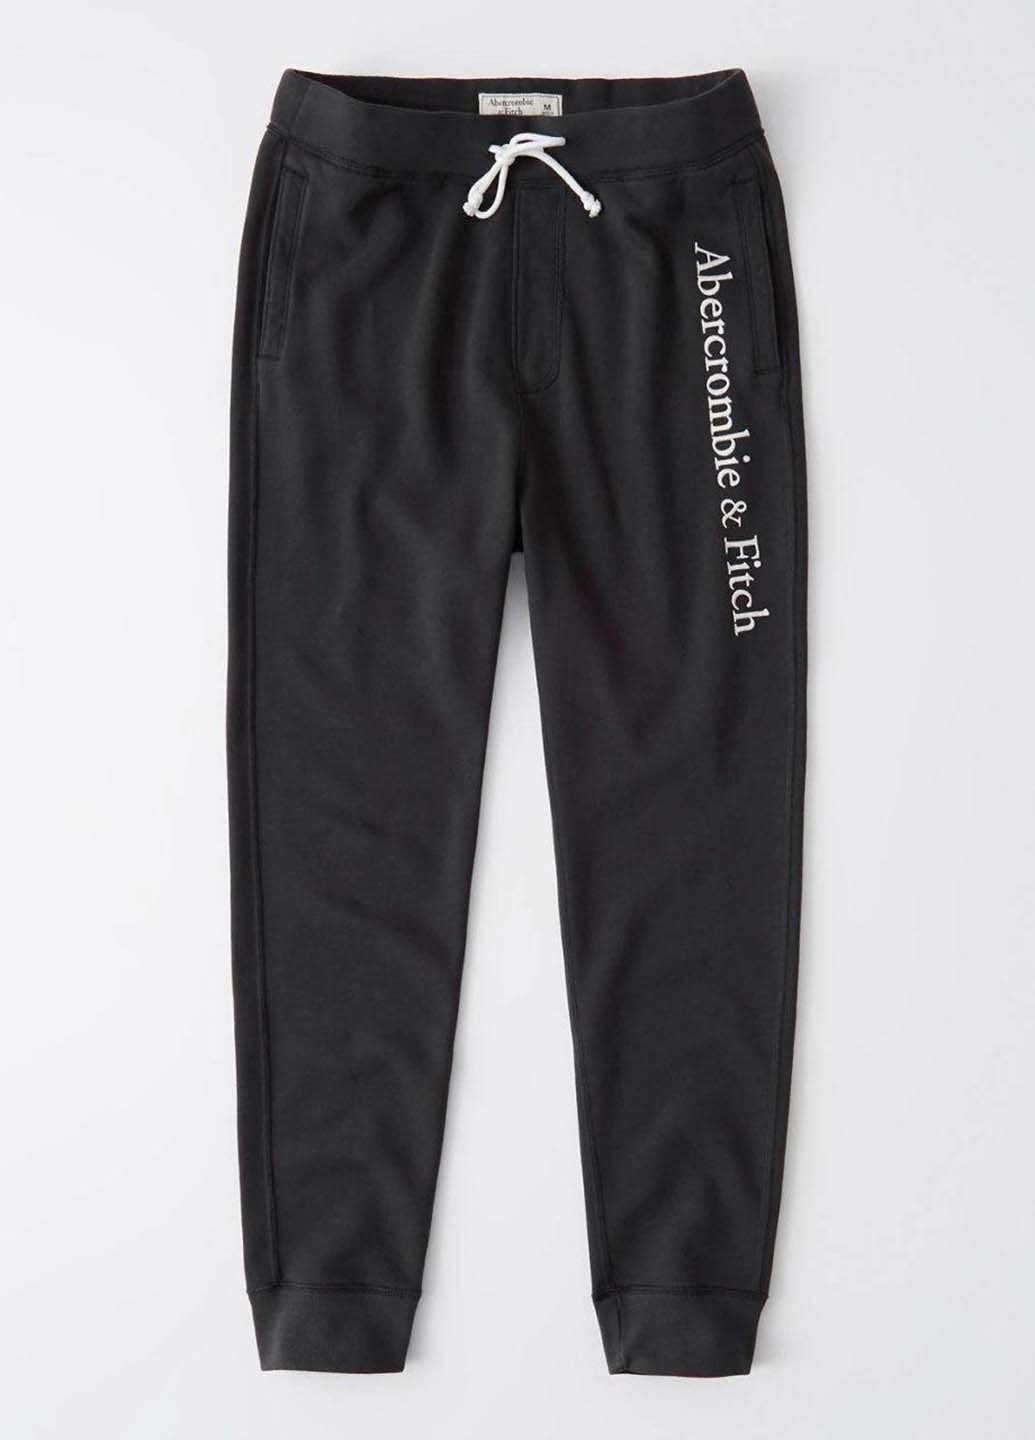 Темно-серые спортивные демисезонные джоггеры брюки Abercrombie & Fitch